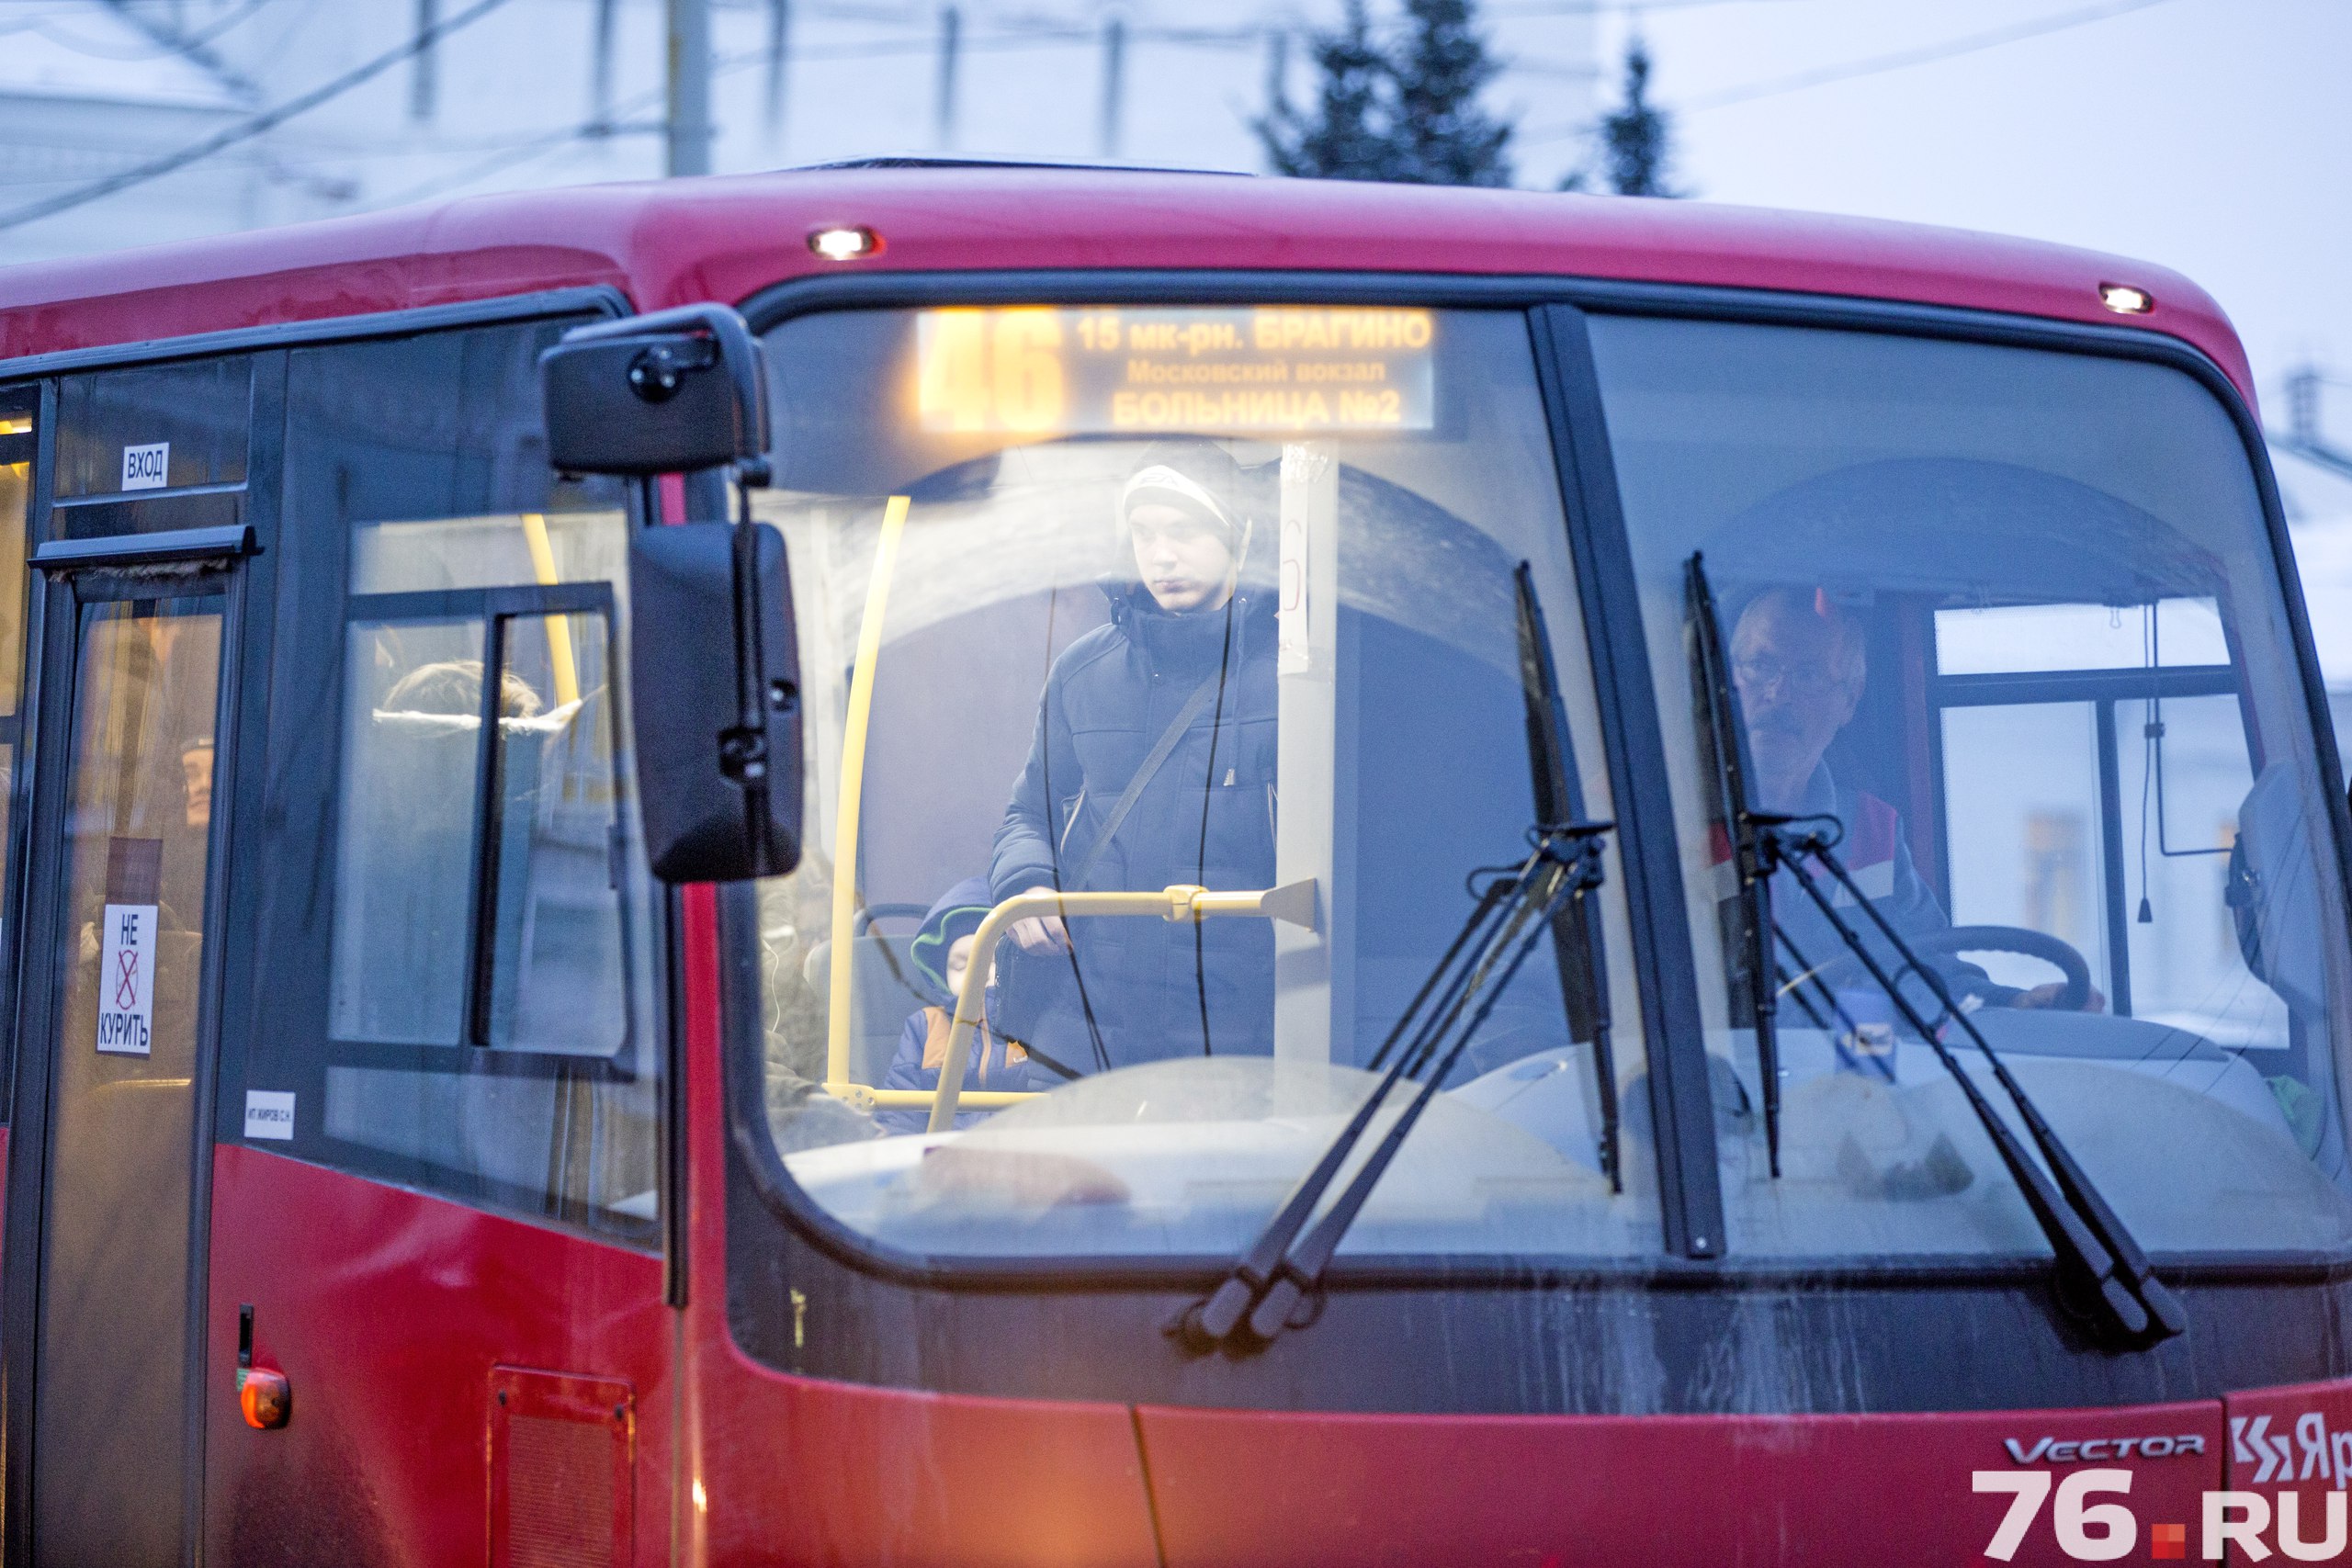 Мэр Ярославля настаивал, чтобы перевозчики заменили маршрутки именно на красные ПАЗы